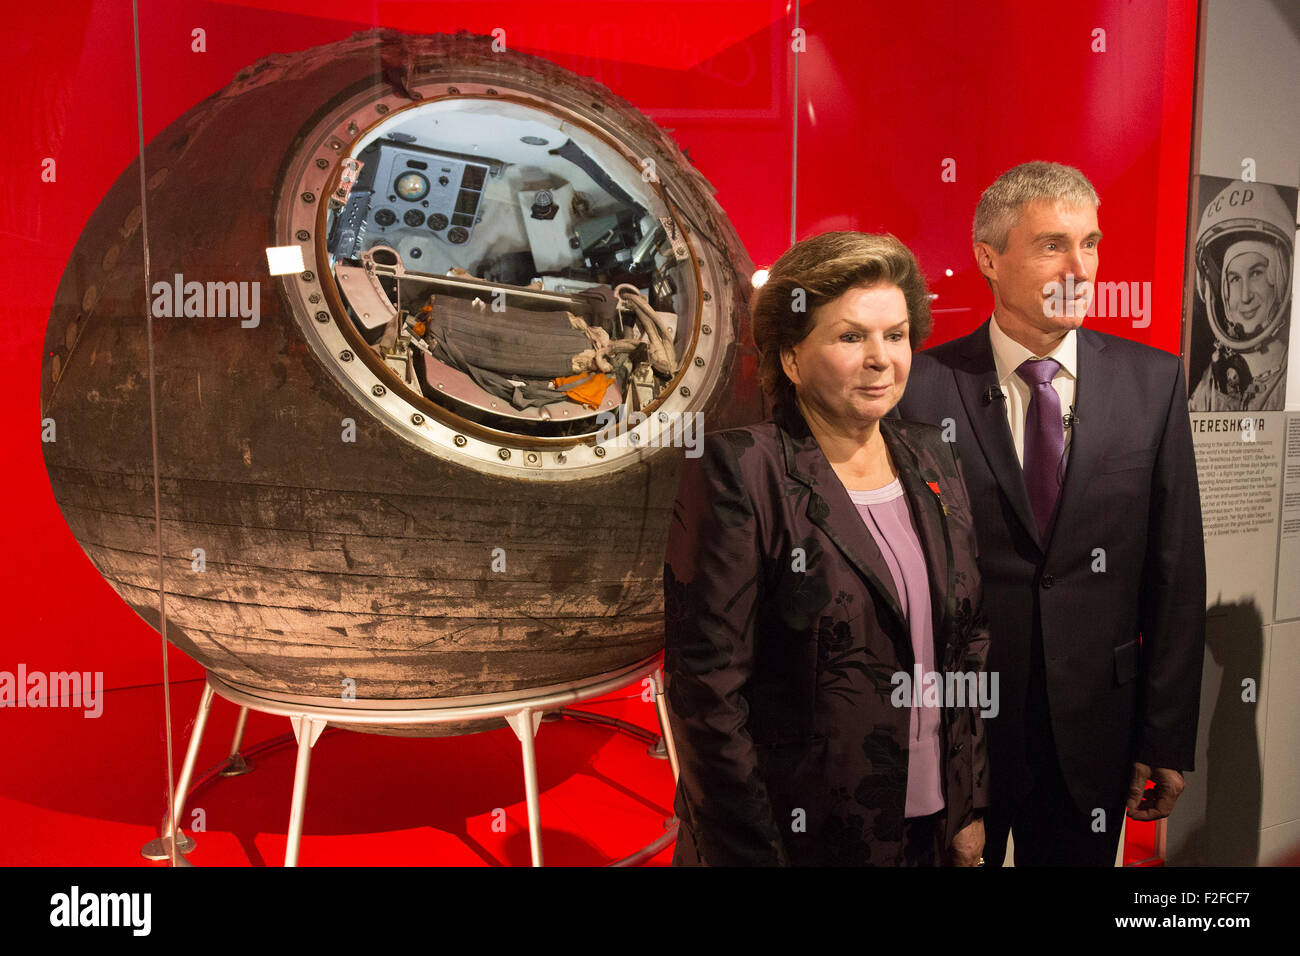 Londres, Reino Unido. 17/09/2015. Los cosmonautas Sergei Krikalev y Valentina Tereshkova posar delante de la nave Vostok-6 que tuvo Tereshkova hacia el espacio. La exposición cosmonautas - el nacimiento de la era espacial se abre en el Museo de la ciencia el 18 de septiembre de 2015 y durará hasta el 13 de marzo de 2016. Foto de stock